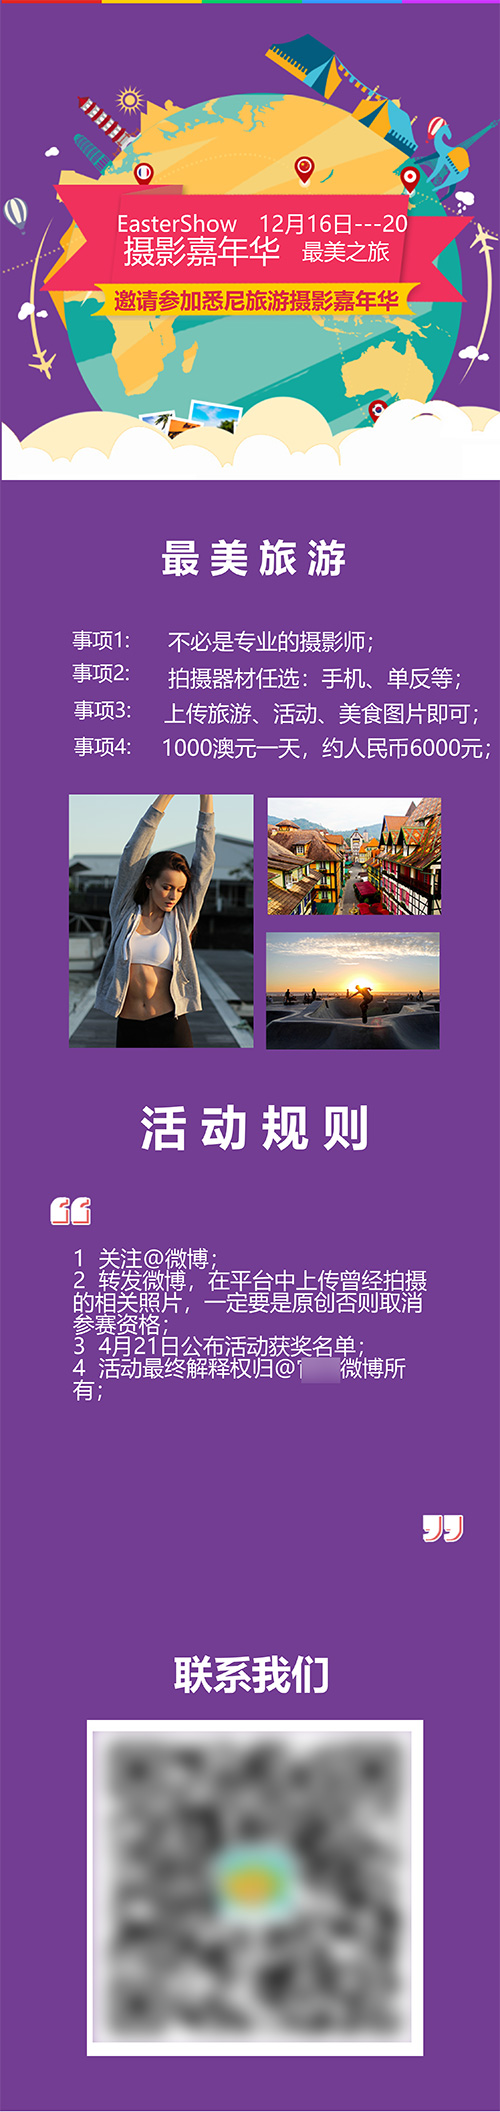 旅游宣传海报长页(9)